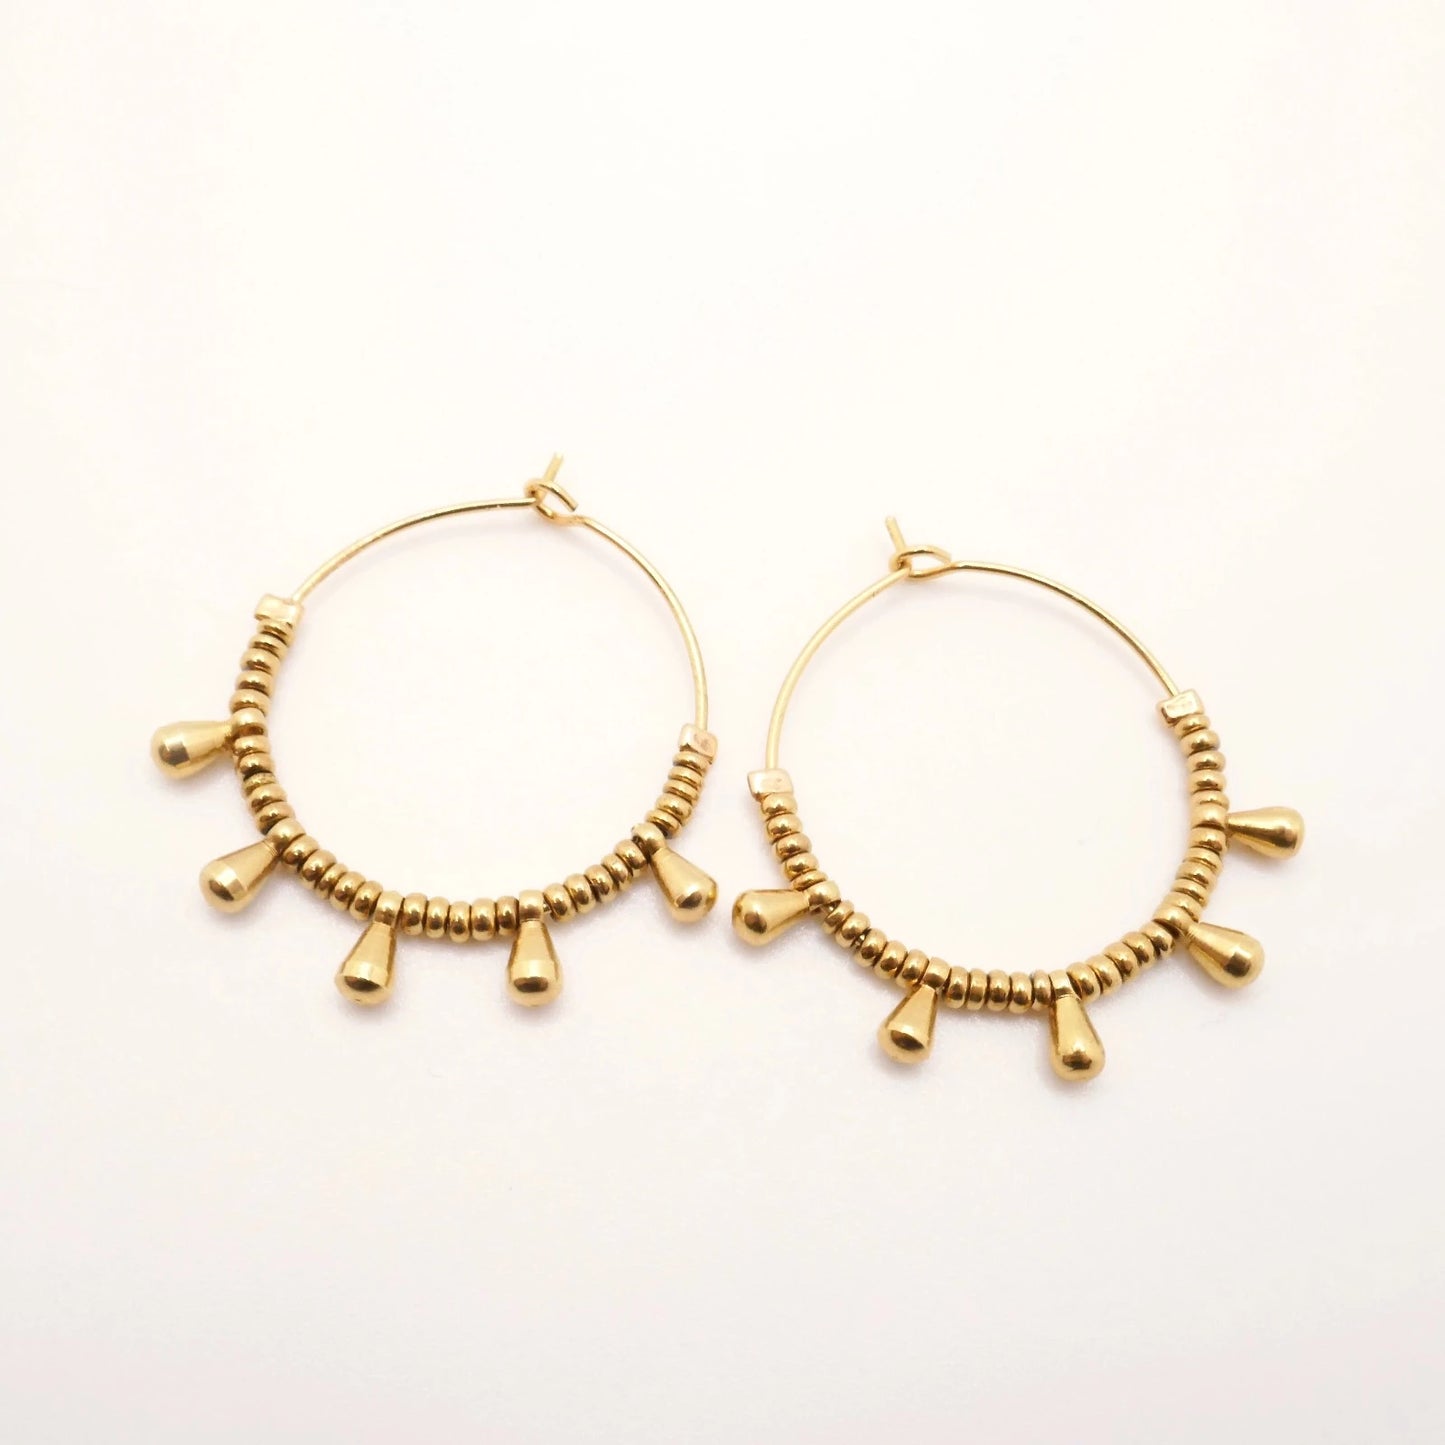 Boucles d'oreilles créoles pour femme en mini perles d'Hématite dorées à l'or fin sur fond blanc